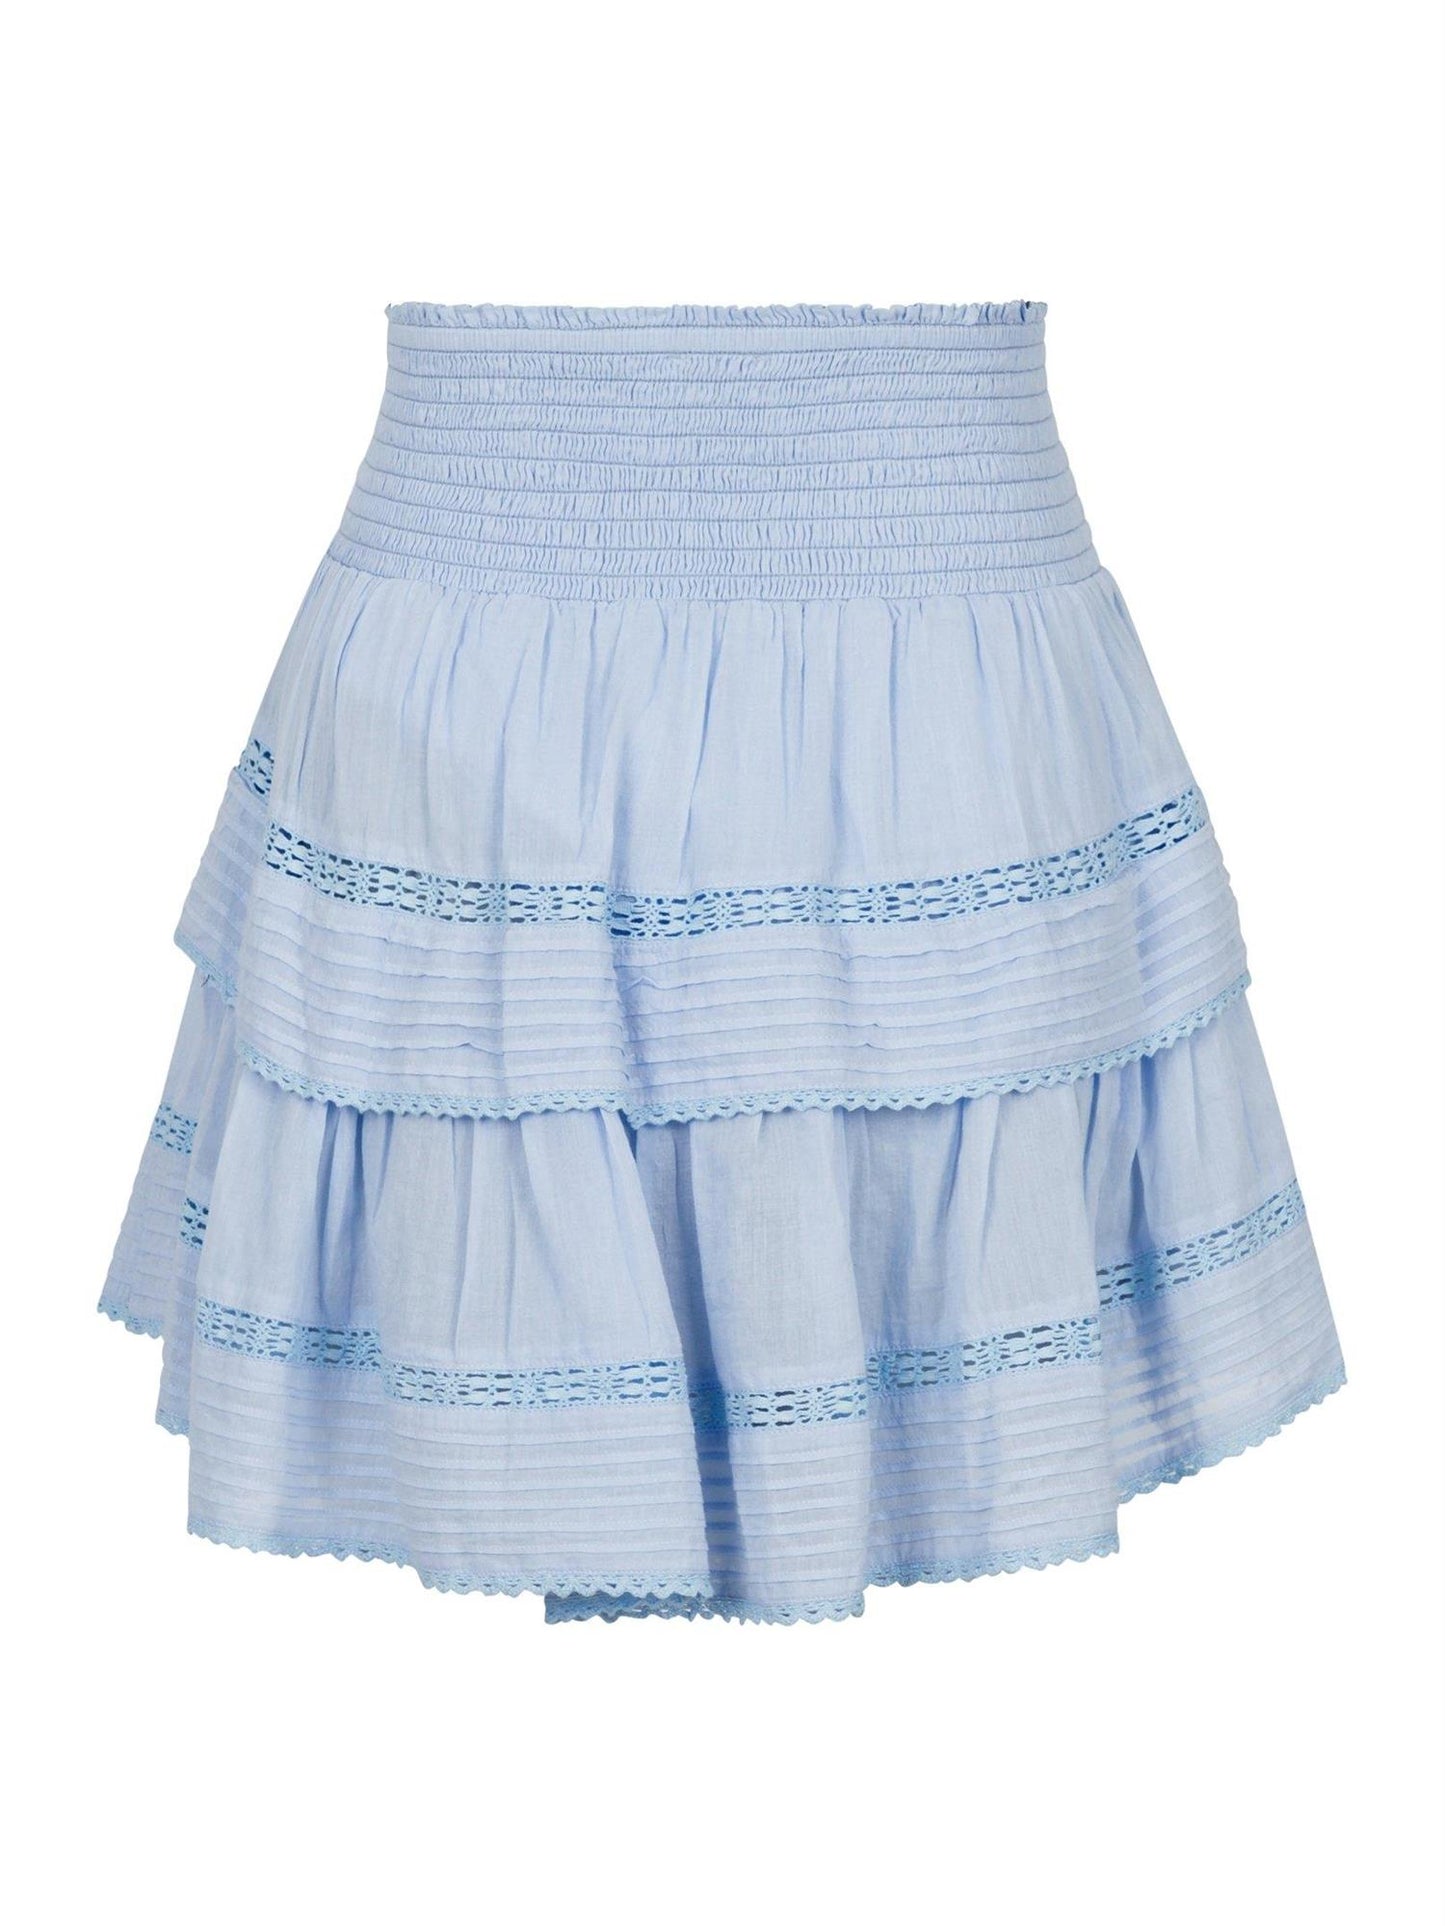 Kenia S Voile Skirt - Light Blue